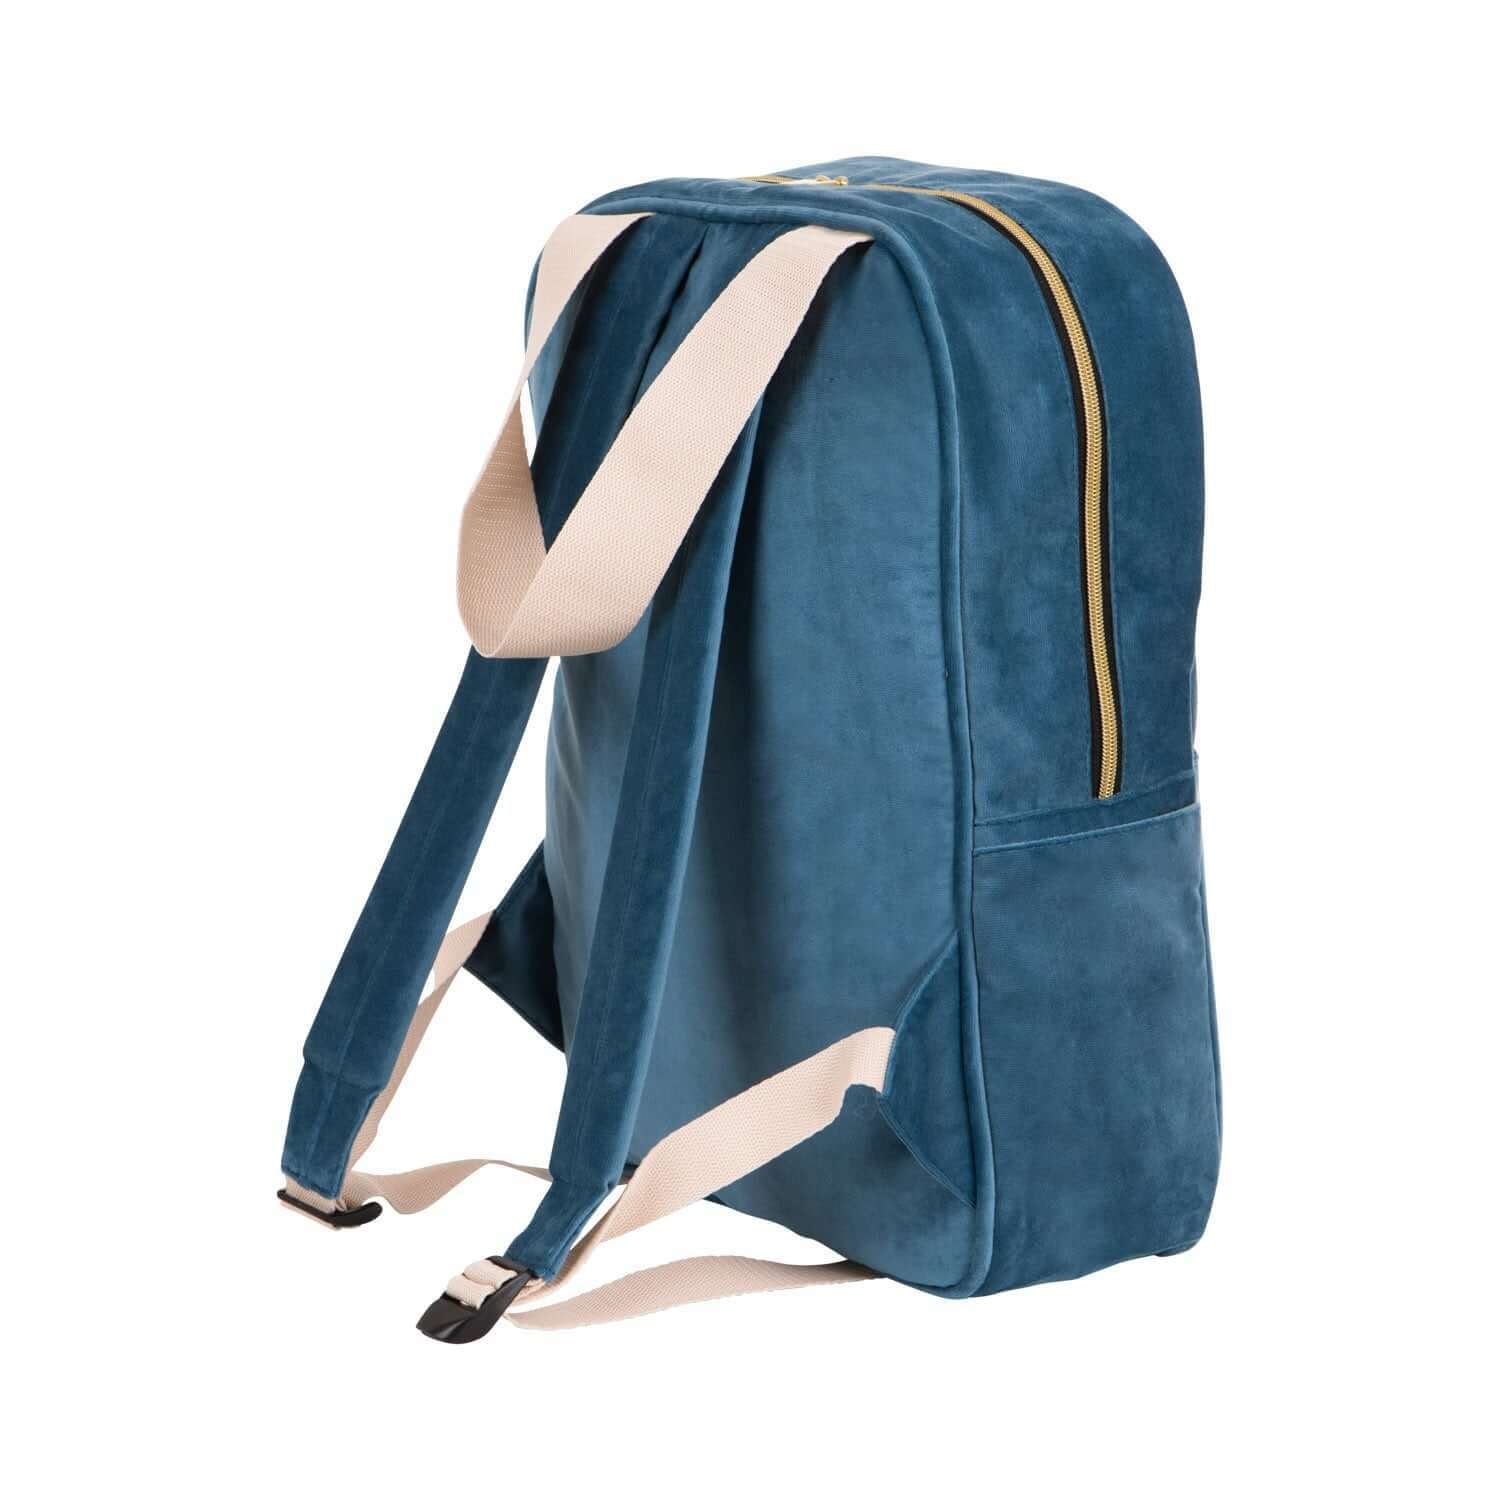 Duży plecak welurowy niebieski od Bettys Home z tyłu, plecak do szkoły dla nastolatków, plecak do szkoły dla dziewczynek 